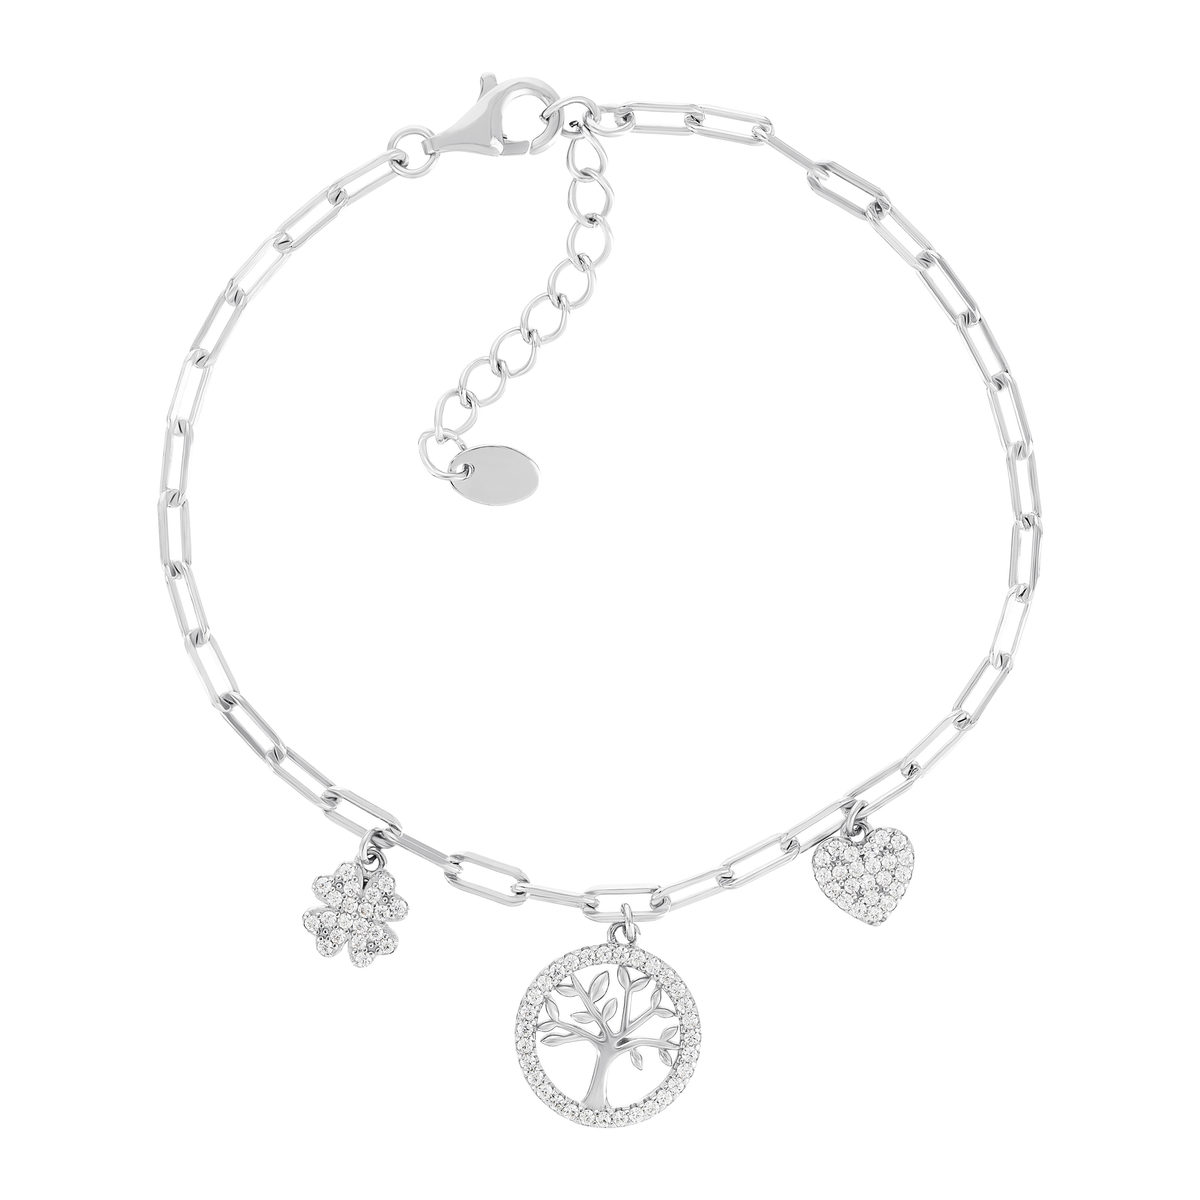 Bracelet argent 925 et zirconias motifs arbre de vie, coeur et trèfle 19cm